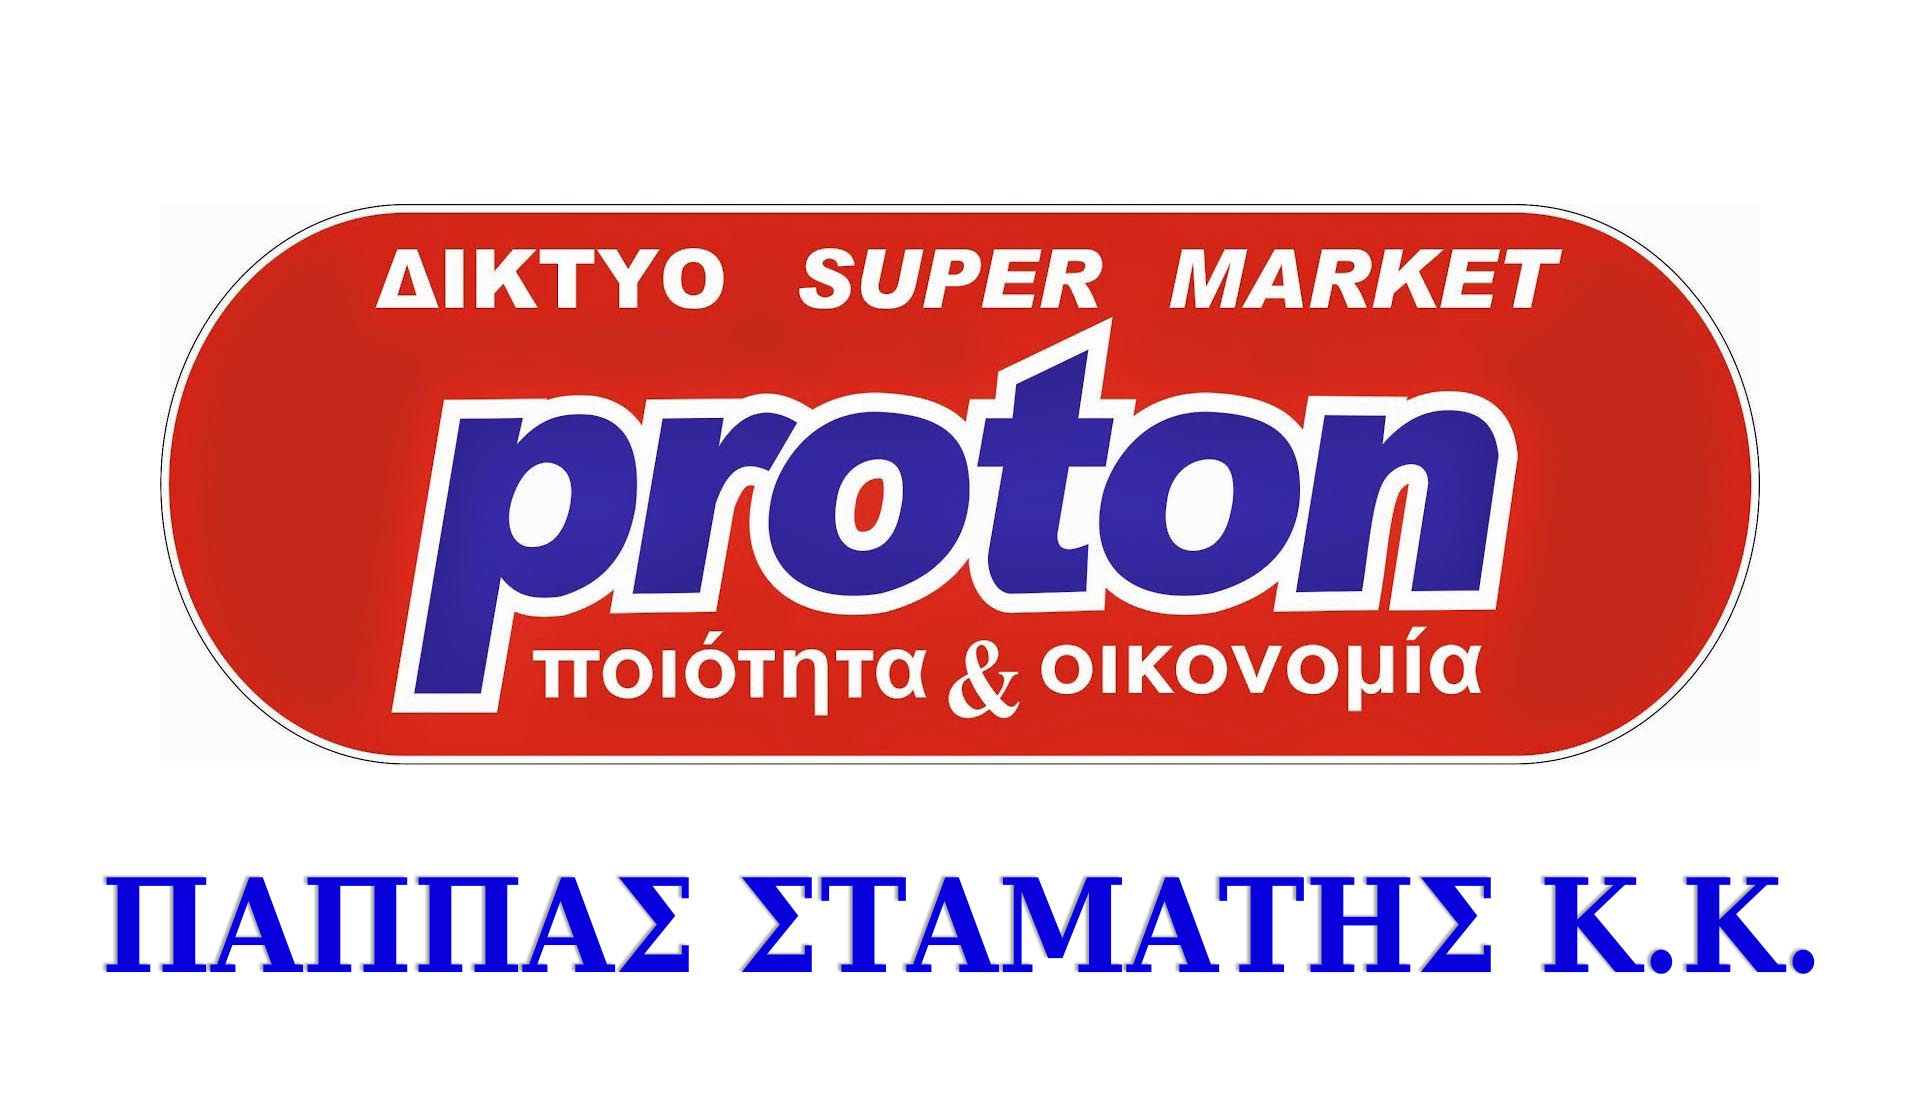 Proton Market Παππάς Σταμάτης κ.κ. Πέρδικα Θεσπρωτίας Ποιότητα και Οικονομία!